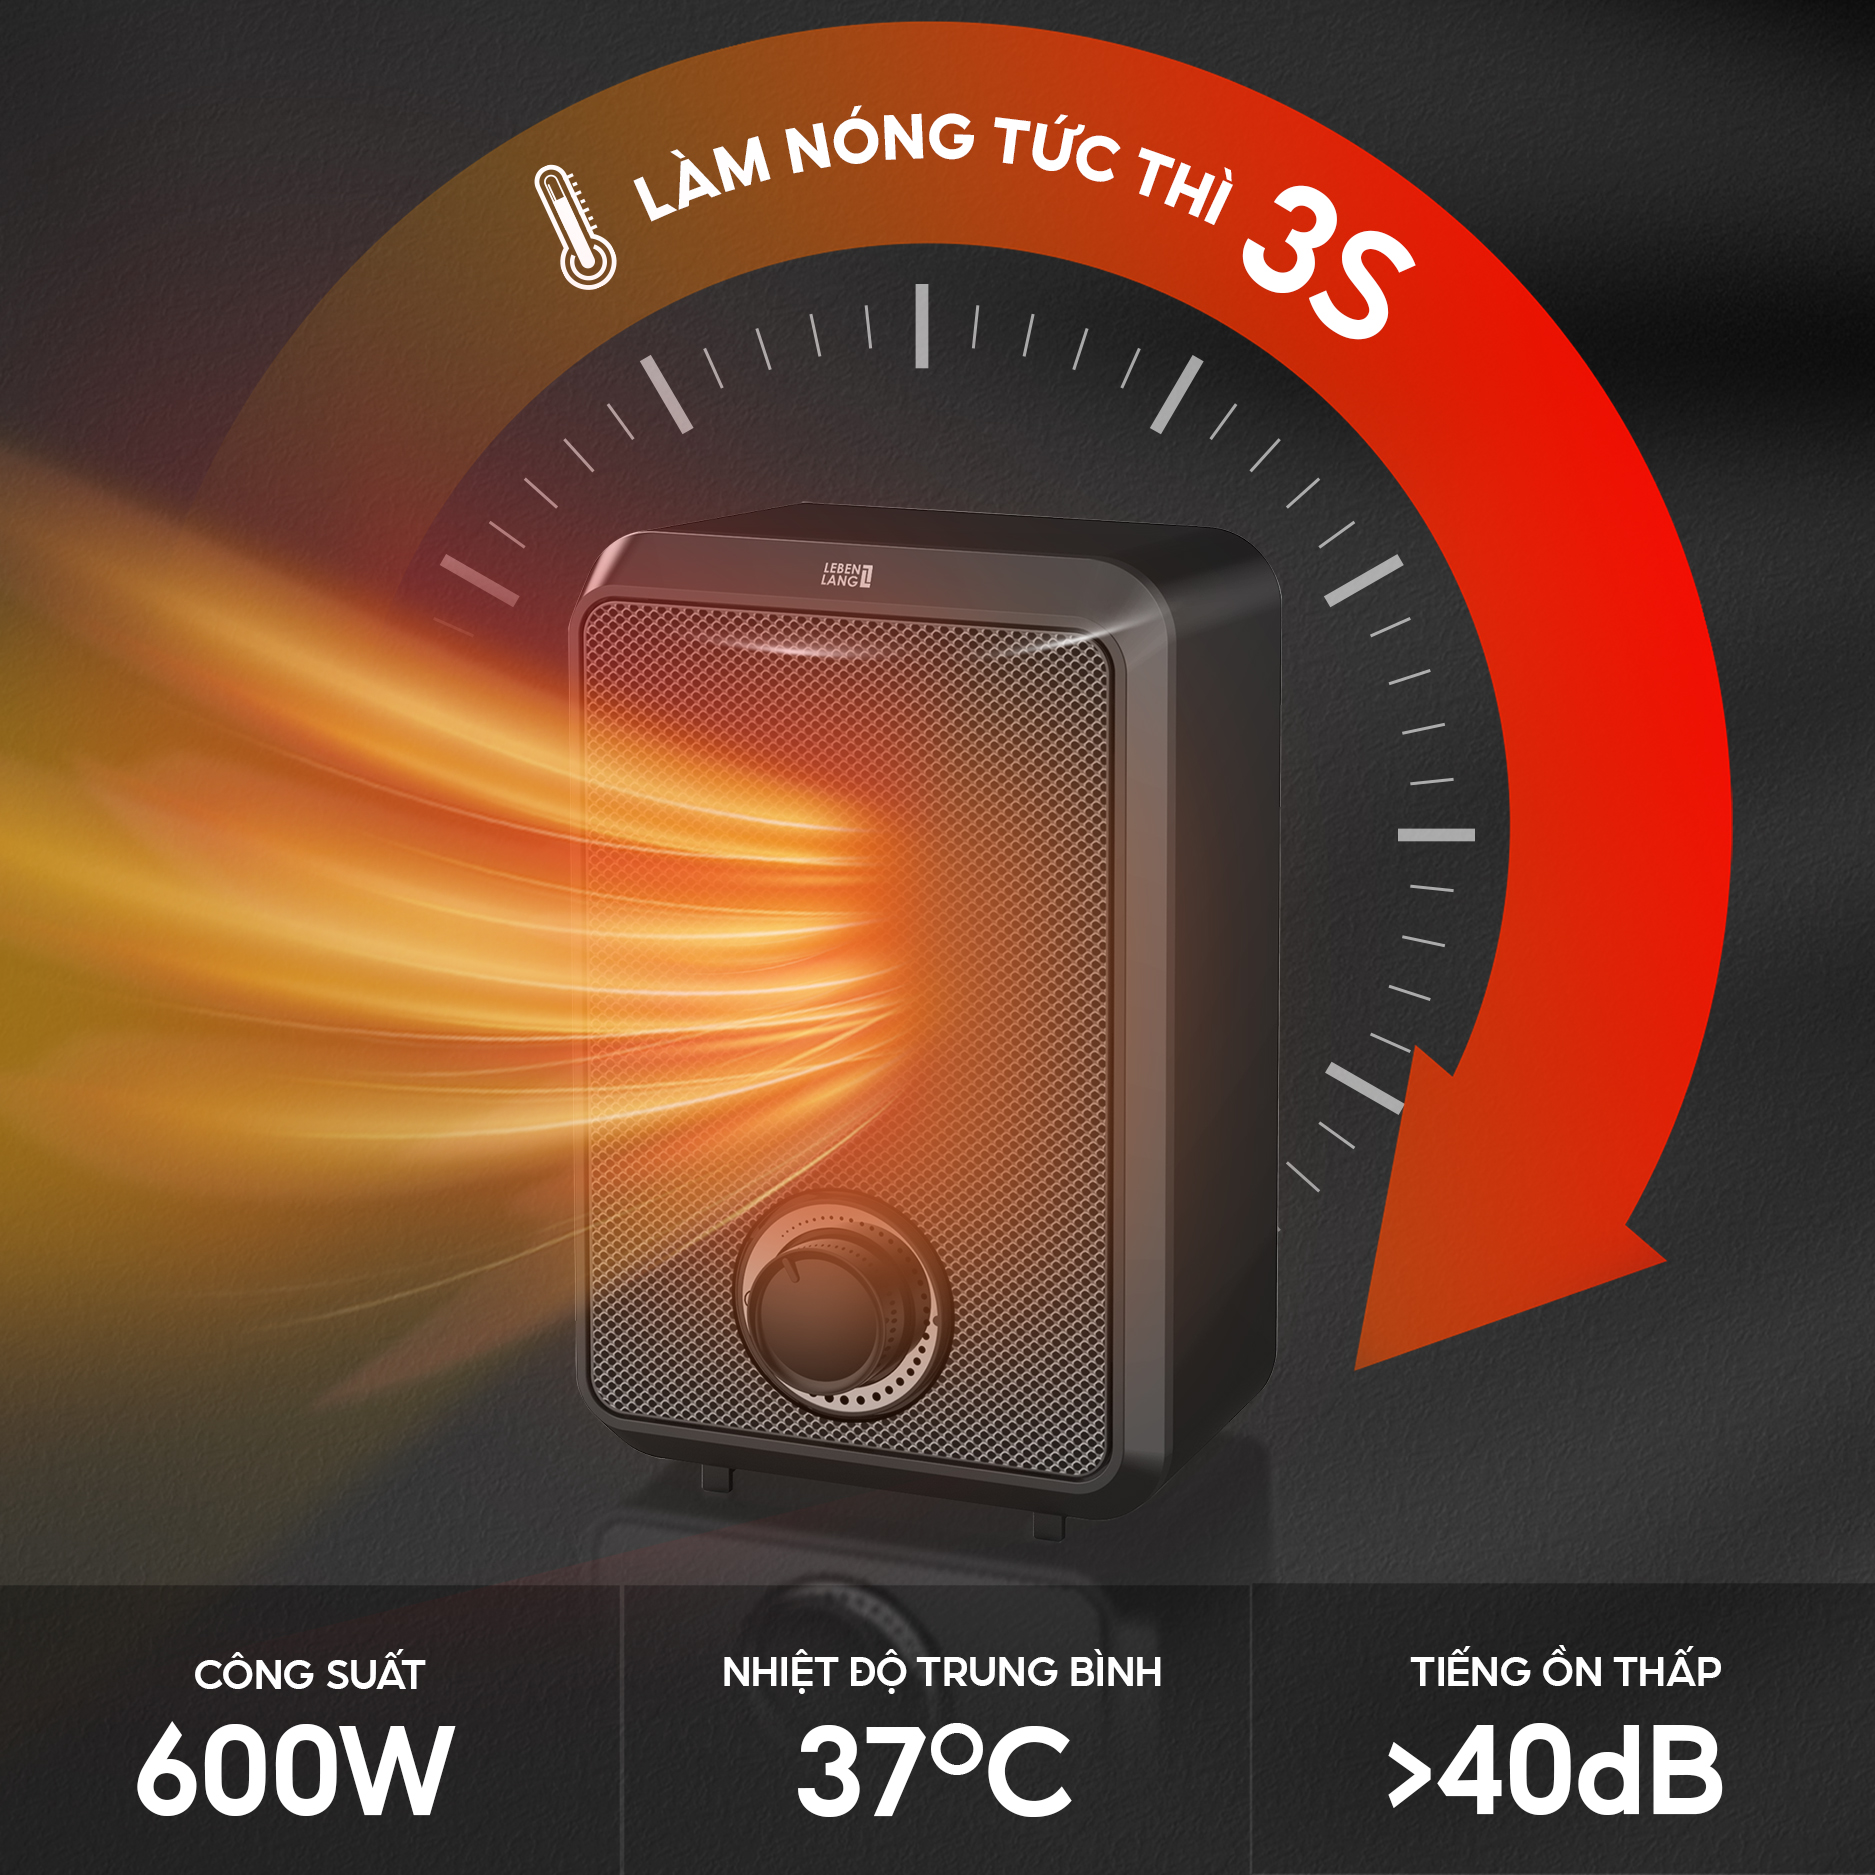 Máy sưởi mini để bàn Lebenlang LBL0276, công suất 600W, làm ấm góc rộng, nóng nhanh, nhỏ gọn tiện lợi, bảo hành 2 năm - hàng chính hãng